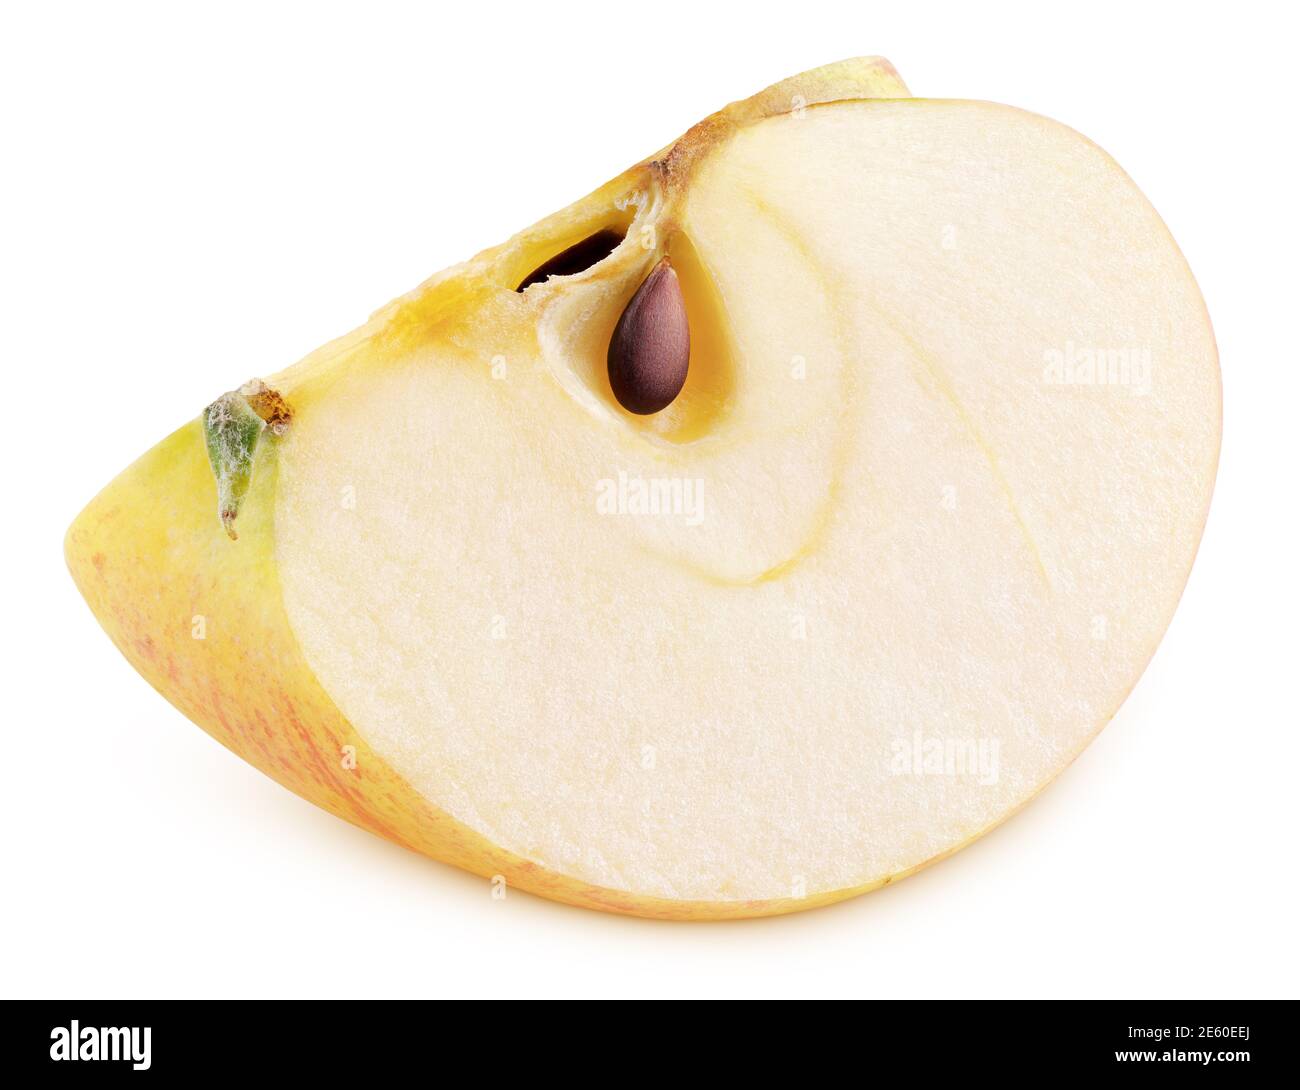 Cuneo di mela rosso giallo isolato su sfondo bianco. Fetta di mela rossa con seme. Profondità di campo completa Foto Stock